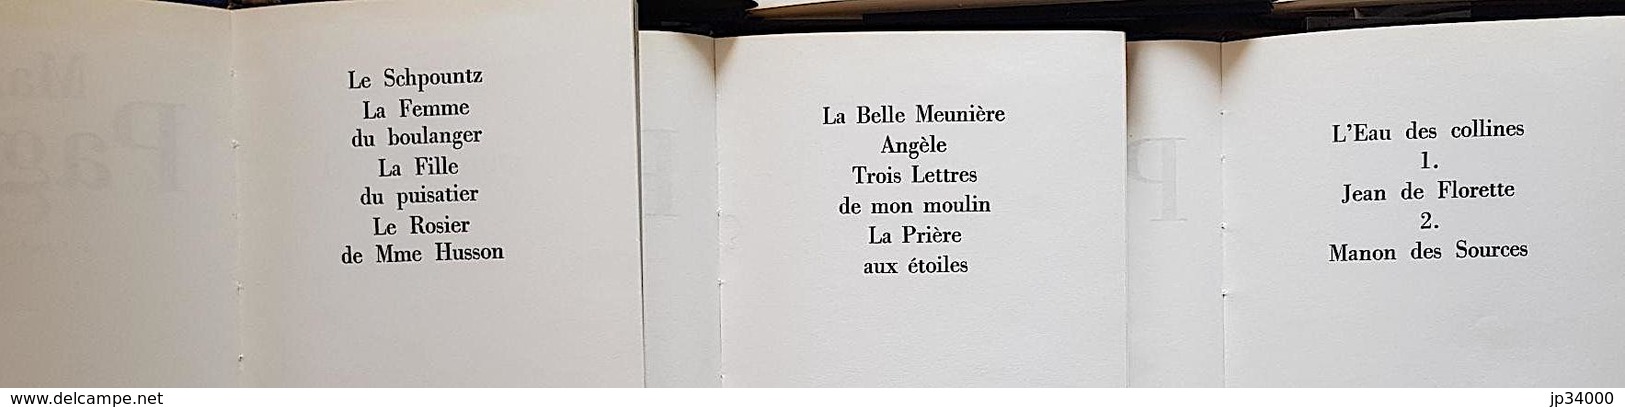 OEUVRES COMPLETES MARCEL PAGNOL (12 volumes) éditions CLUB de L'Honnete Homme. Bel état